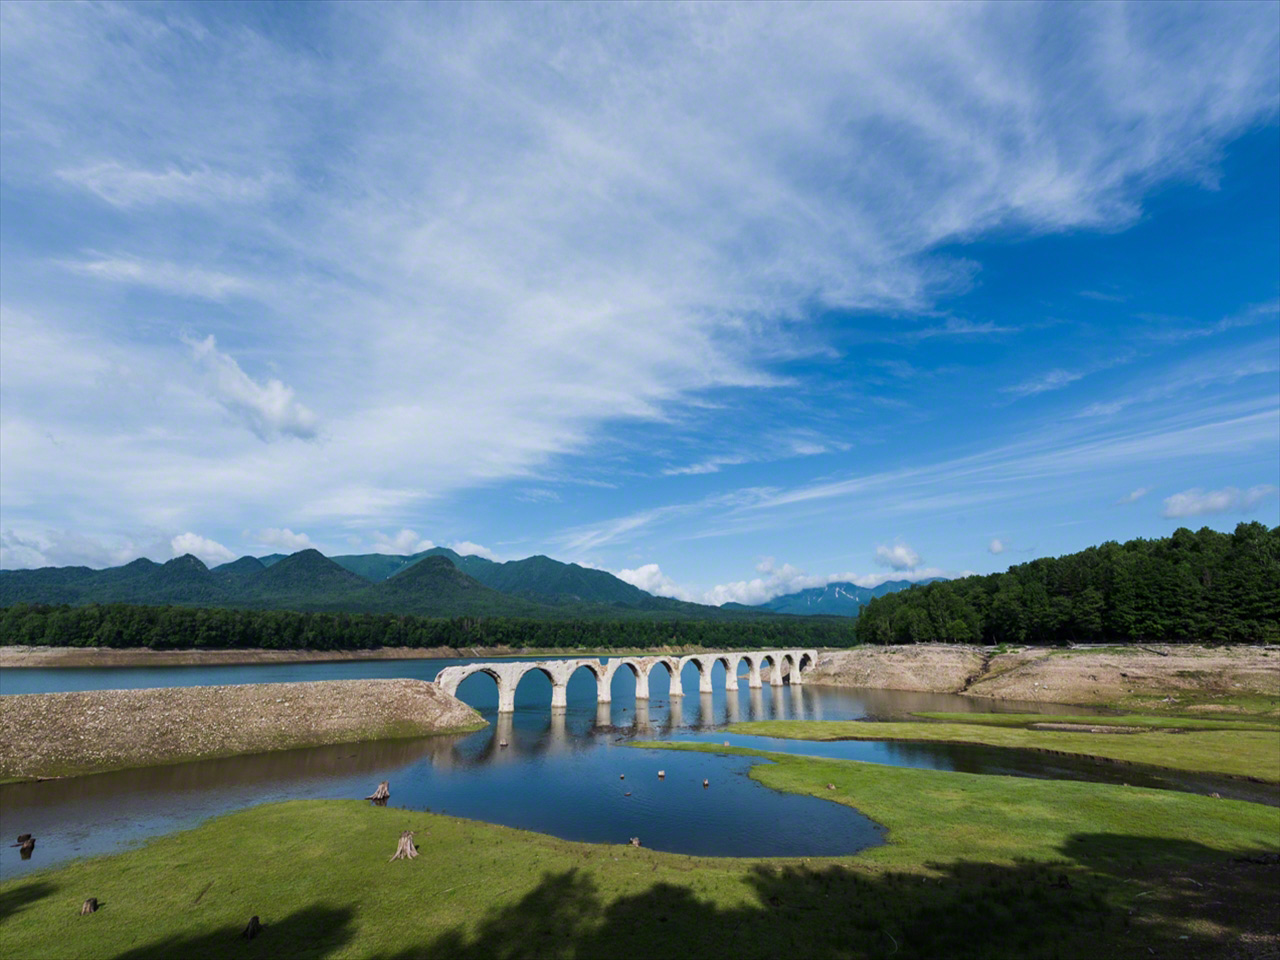 في شهر يوليو/ تموز يمتزج الجسر مع الطبيعة المحيطة في مشهد خلاب تحت سماء هوكايدو الصافية.